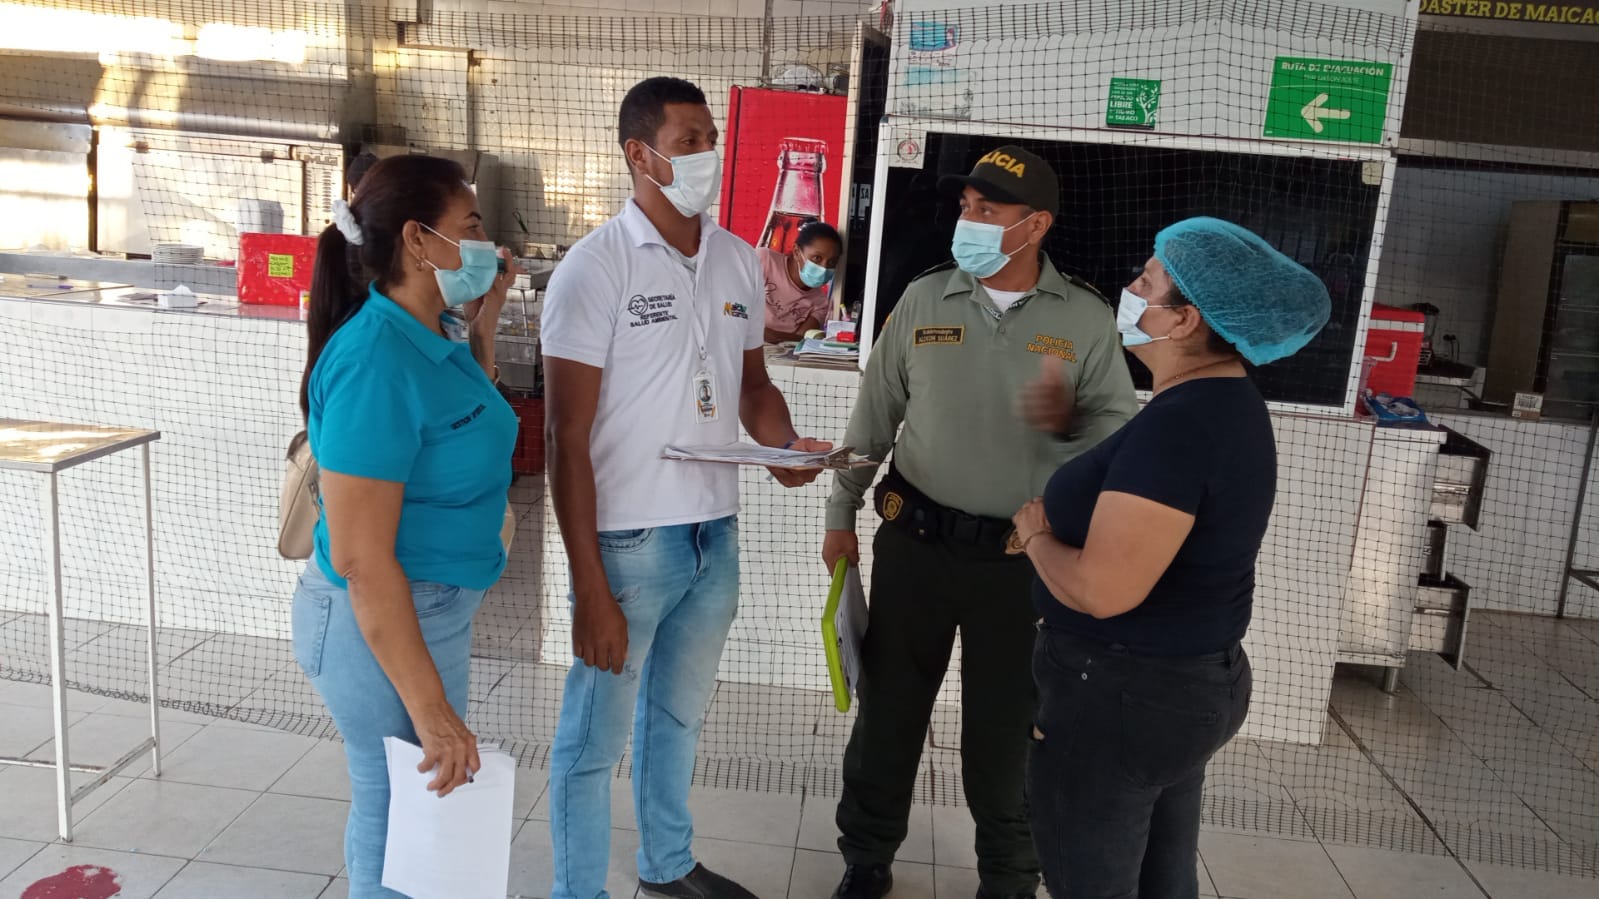 https://www.notasrosas.com/En Maicao: Policía de Turismo socializa decretos que reglamentan la presentación del Carnet de Vacunación, para ingresar a sitios de aglomeraciones